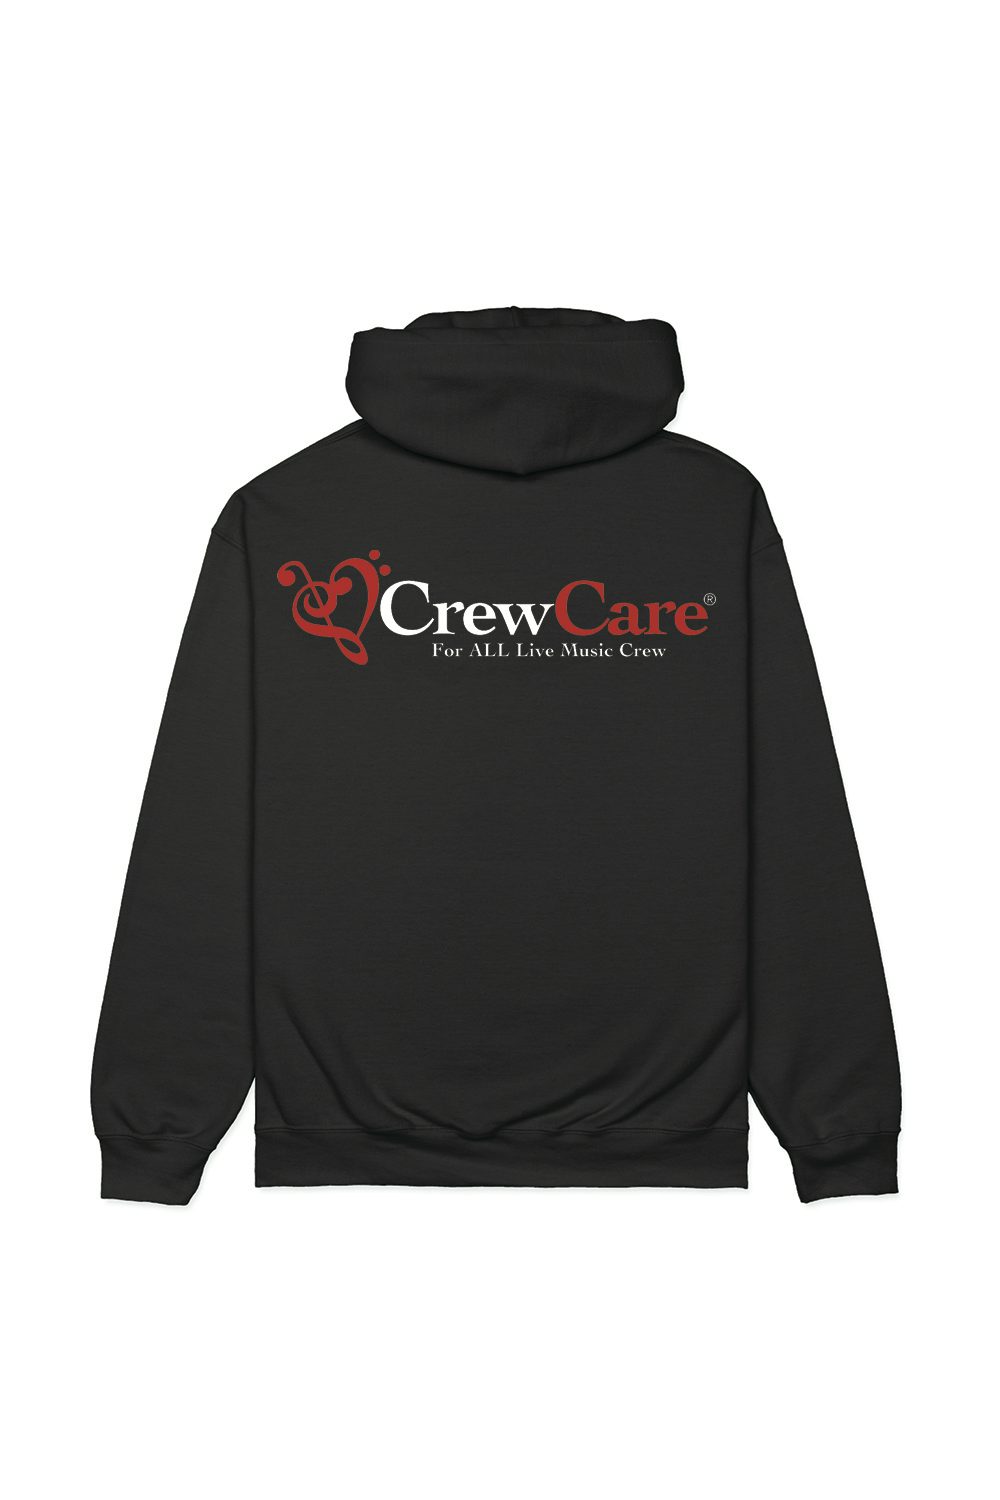 Crew Care CrewCare Black Hoodie